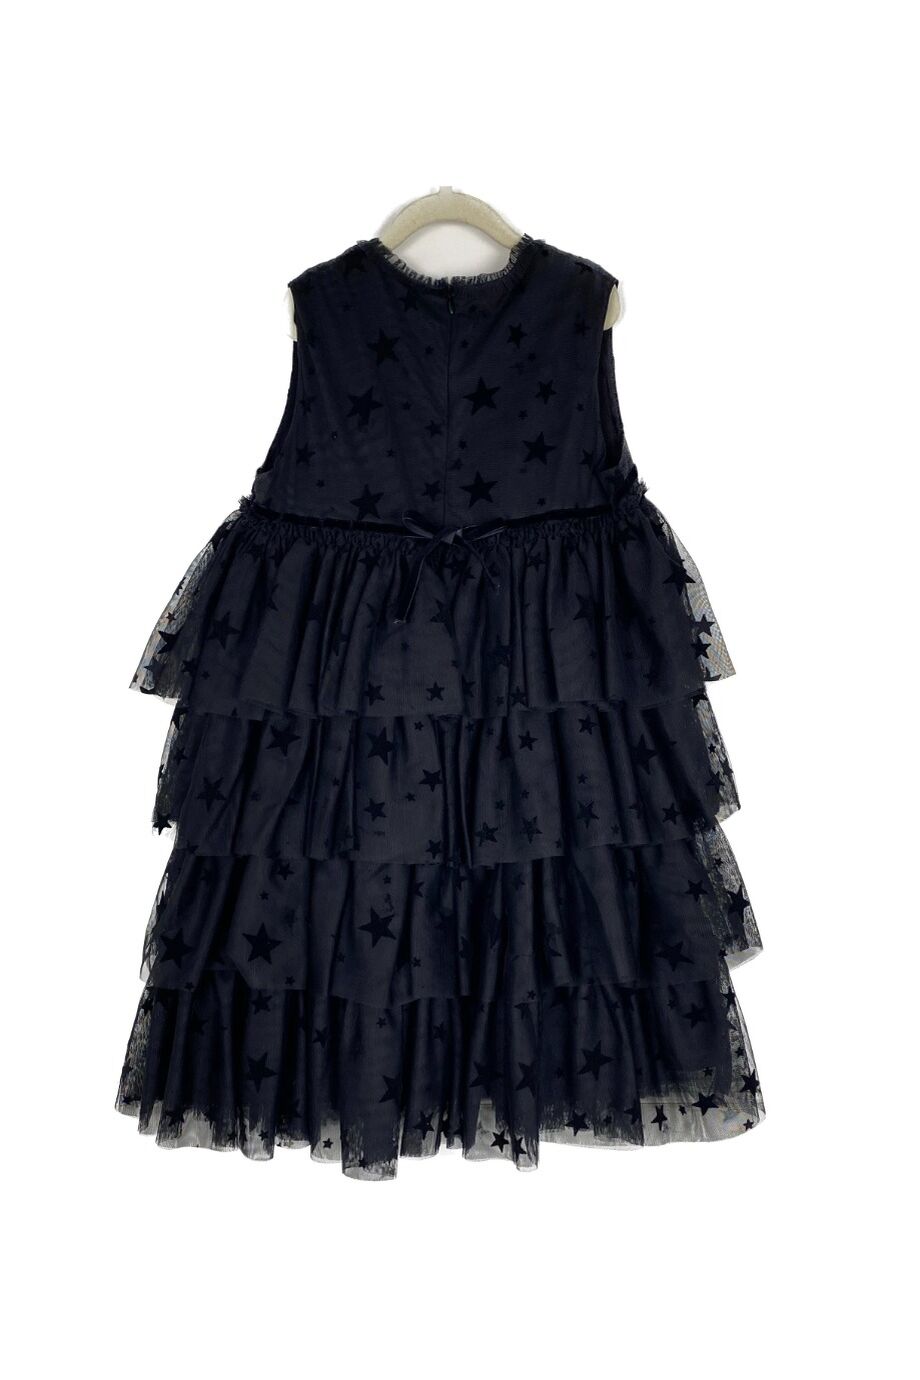 image 2 Детское платье чёрного цвета со звездами